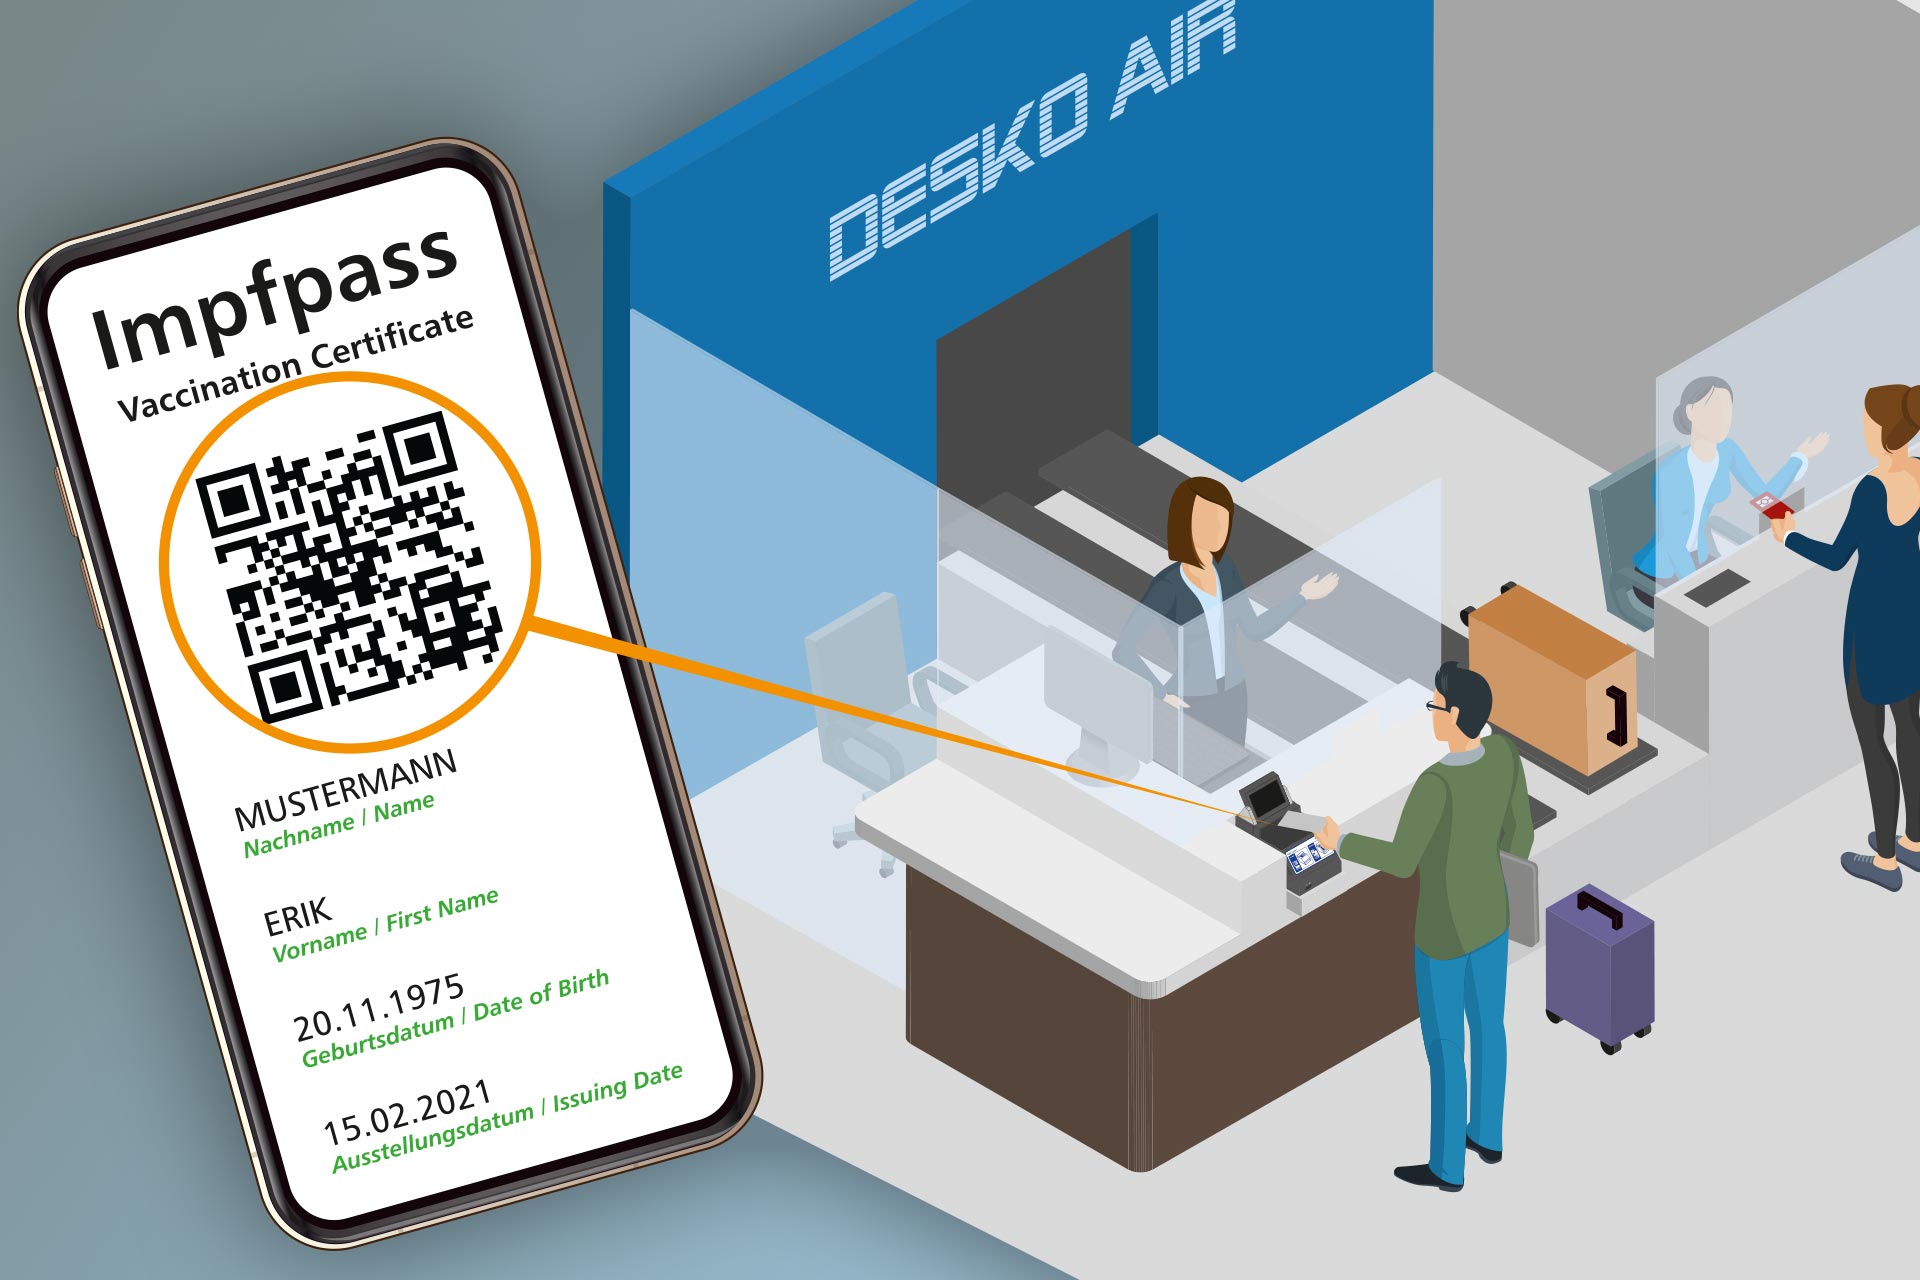 DESKO -The Digital Green Certificate